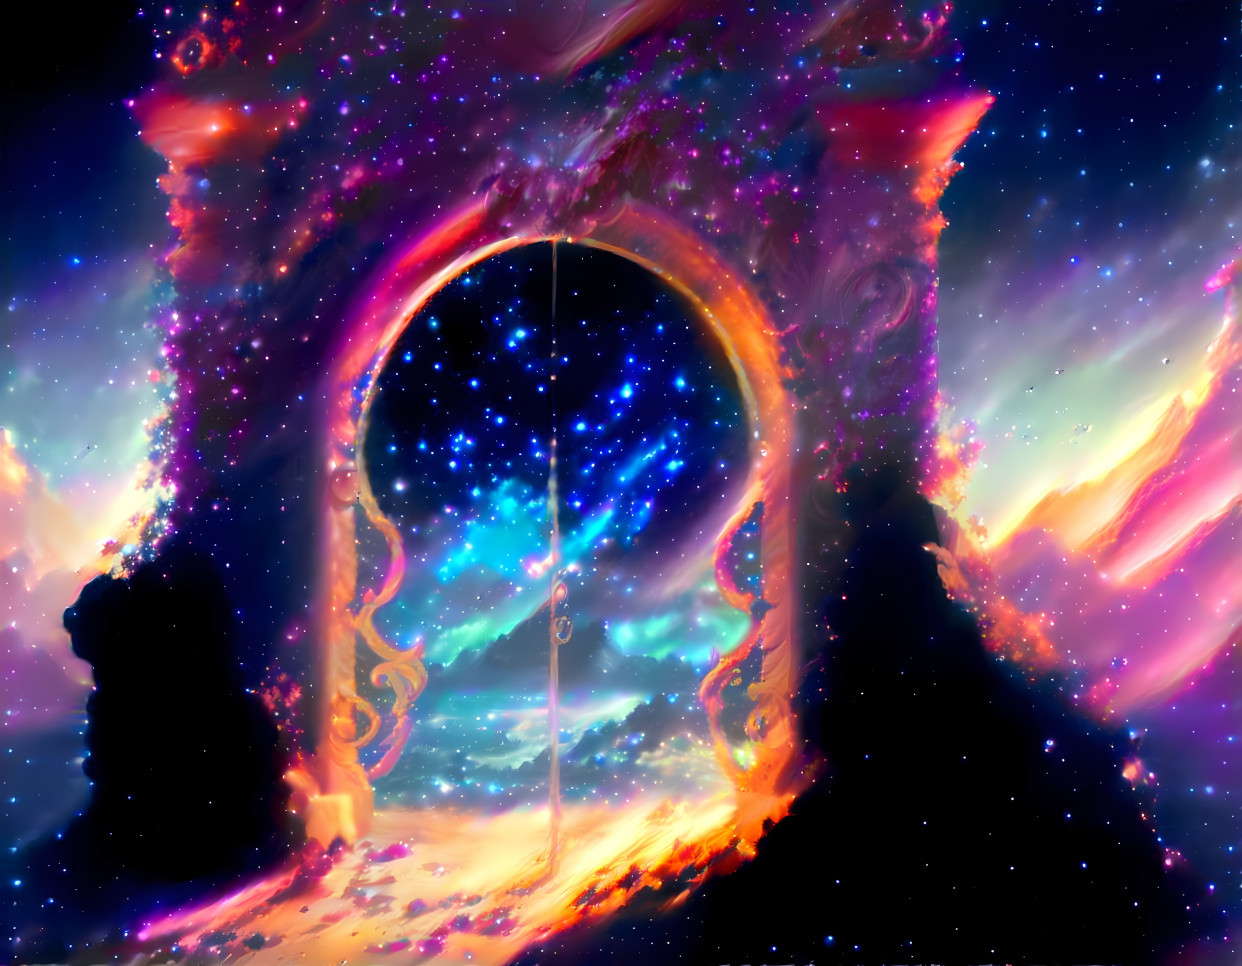 The dreamy portal